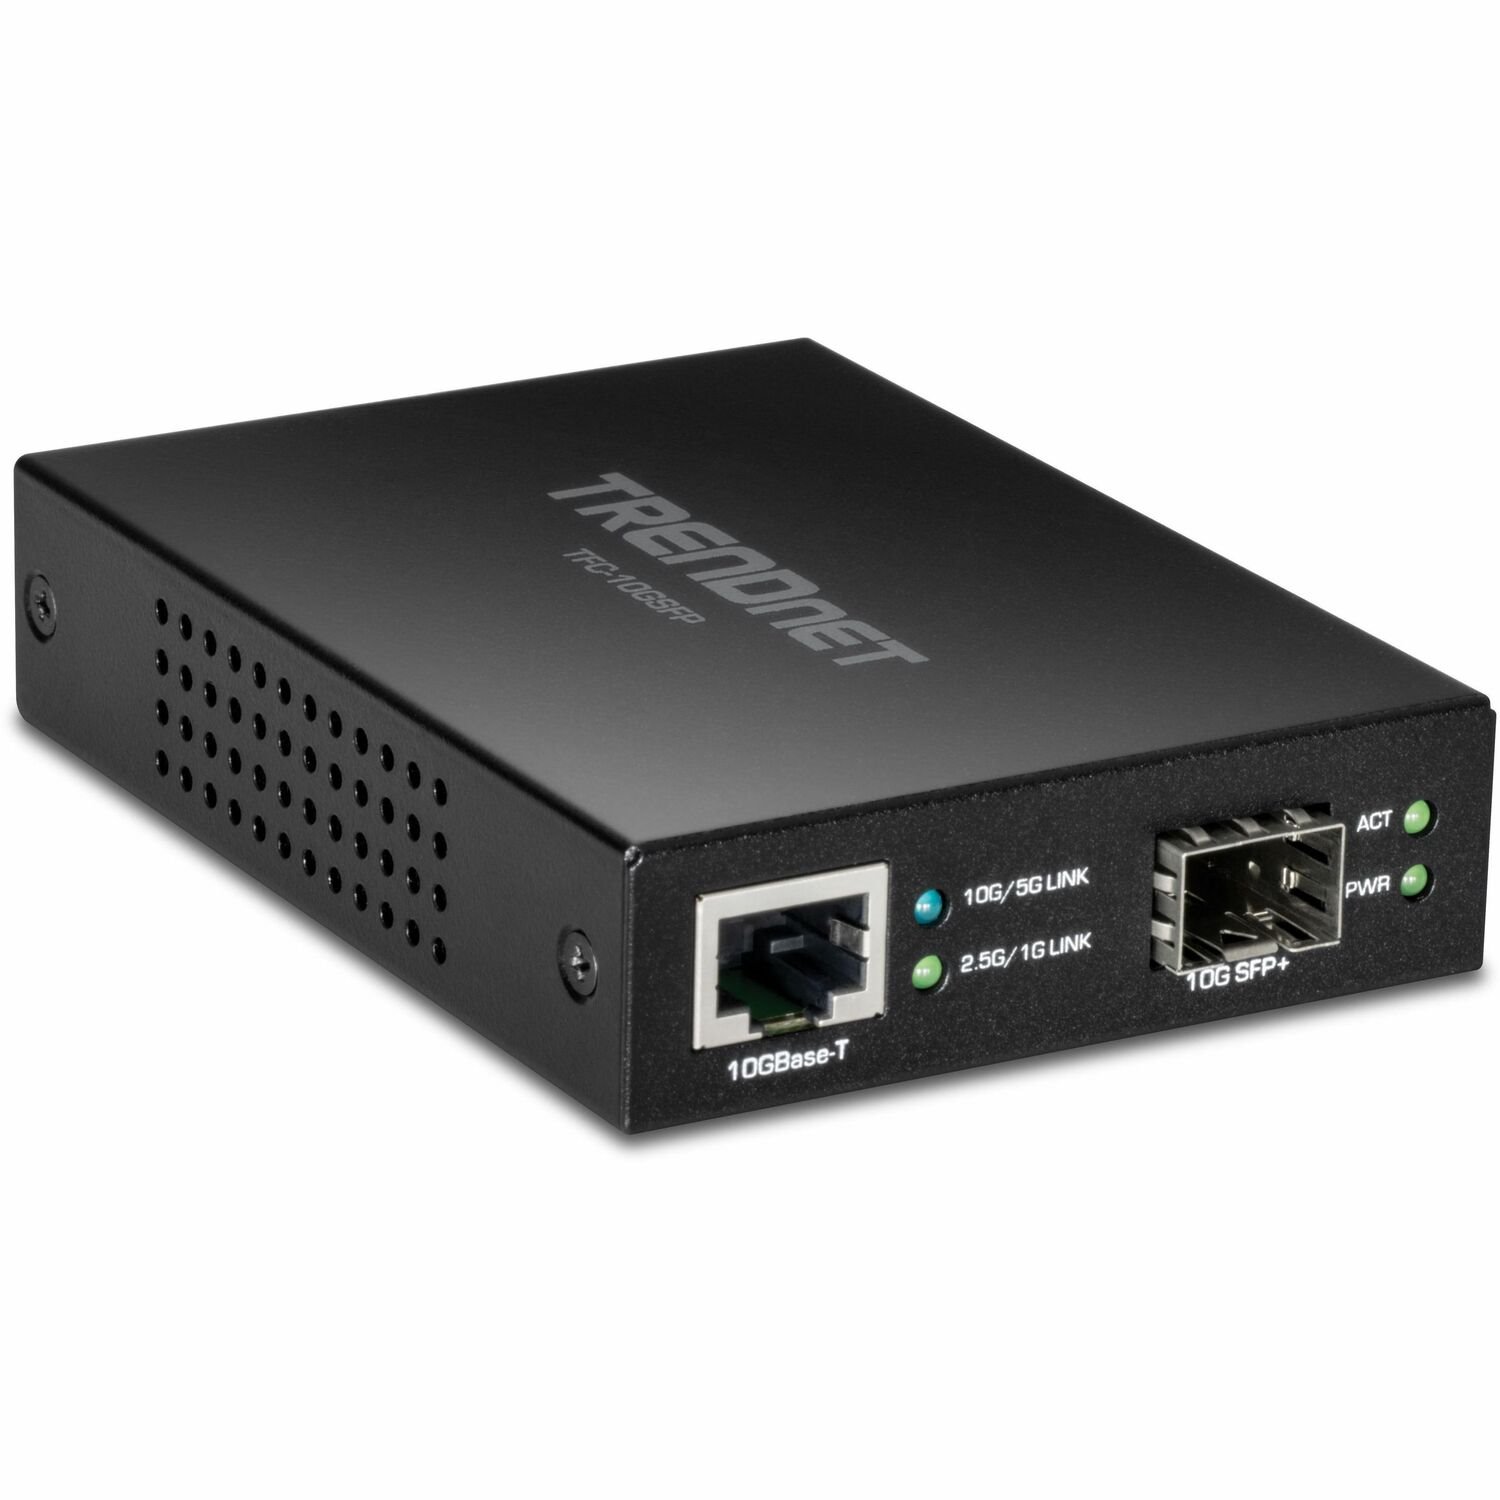 TRENDnet 10GBase-T to SFP+ Fiber Media Converter